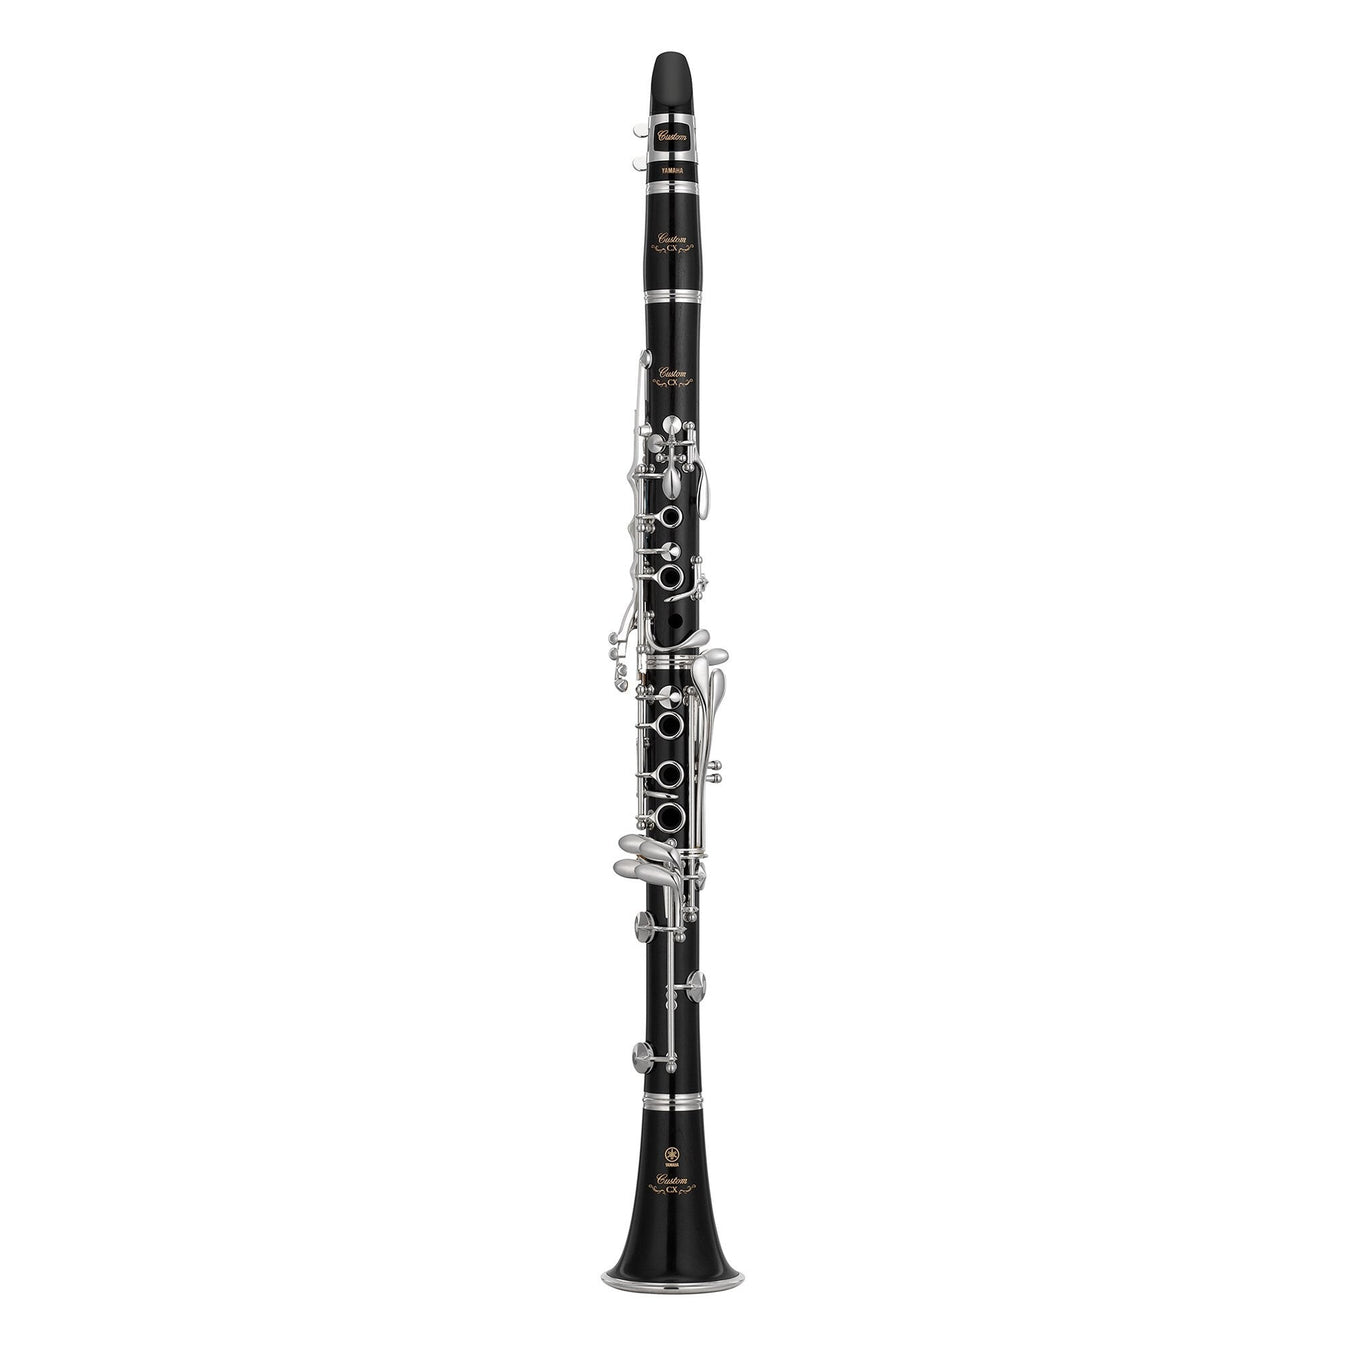 Kèn Clarinet Bb Yamaha YCL-CXII-Mai Nguyên Music